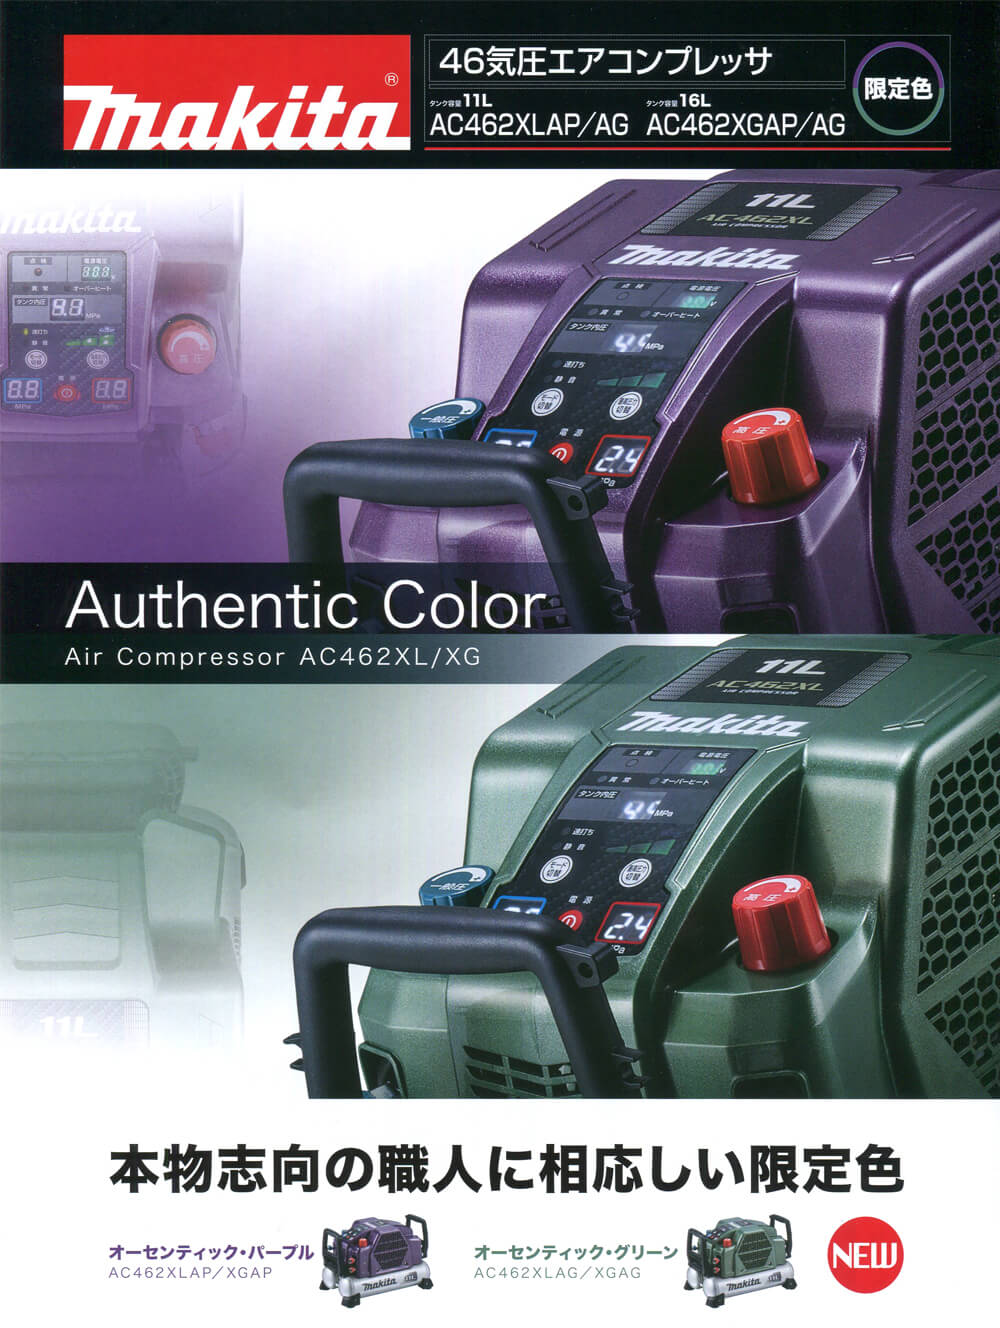 マキタ AC462XLAP 46気圧エアコンプレッサー11L【限定色】オーセンティックパープル ウエダ金物【公式サイト】